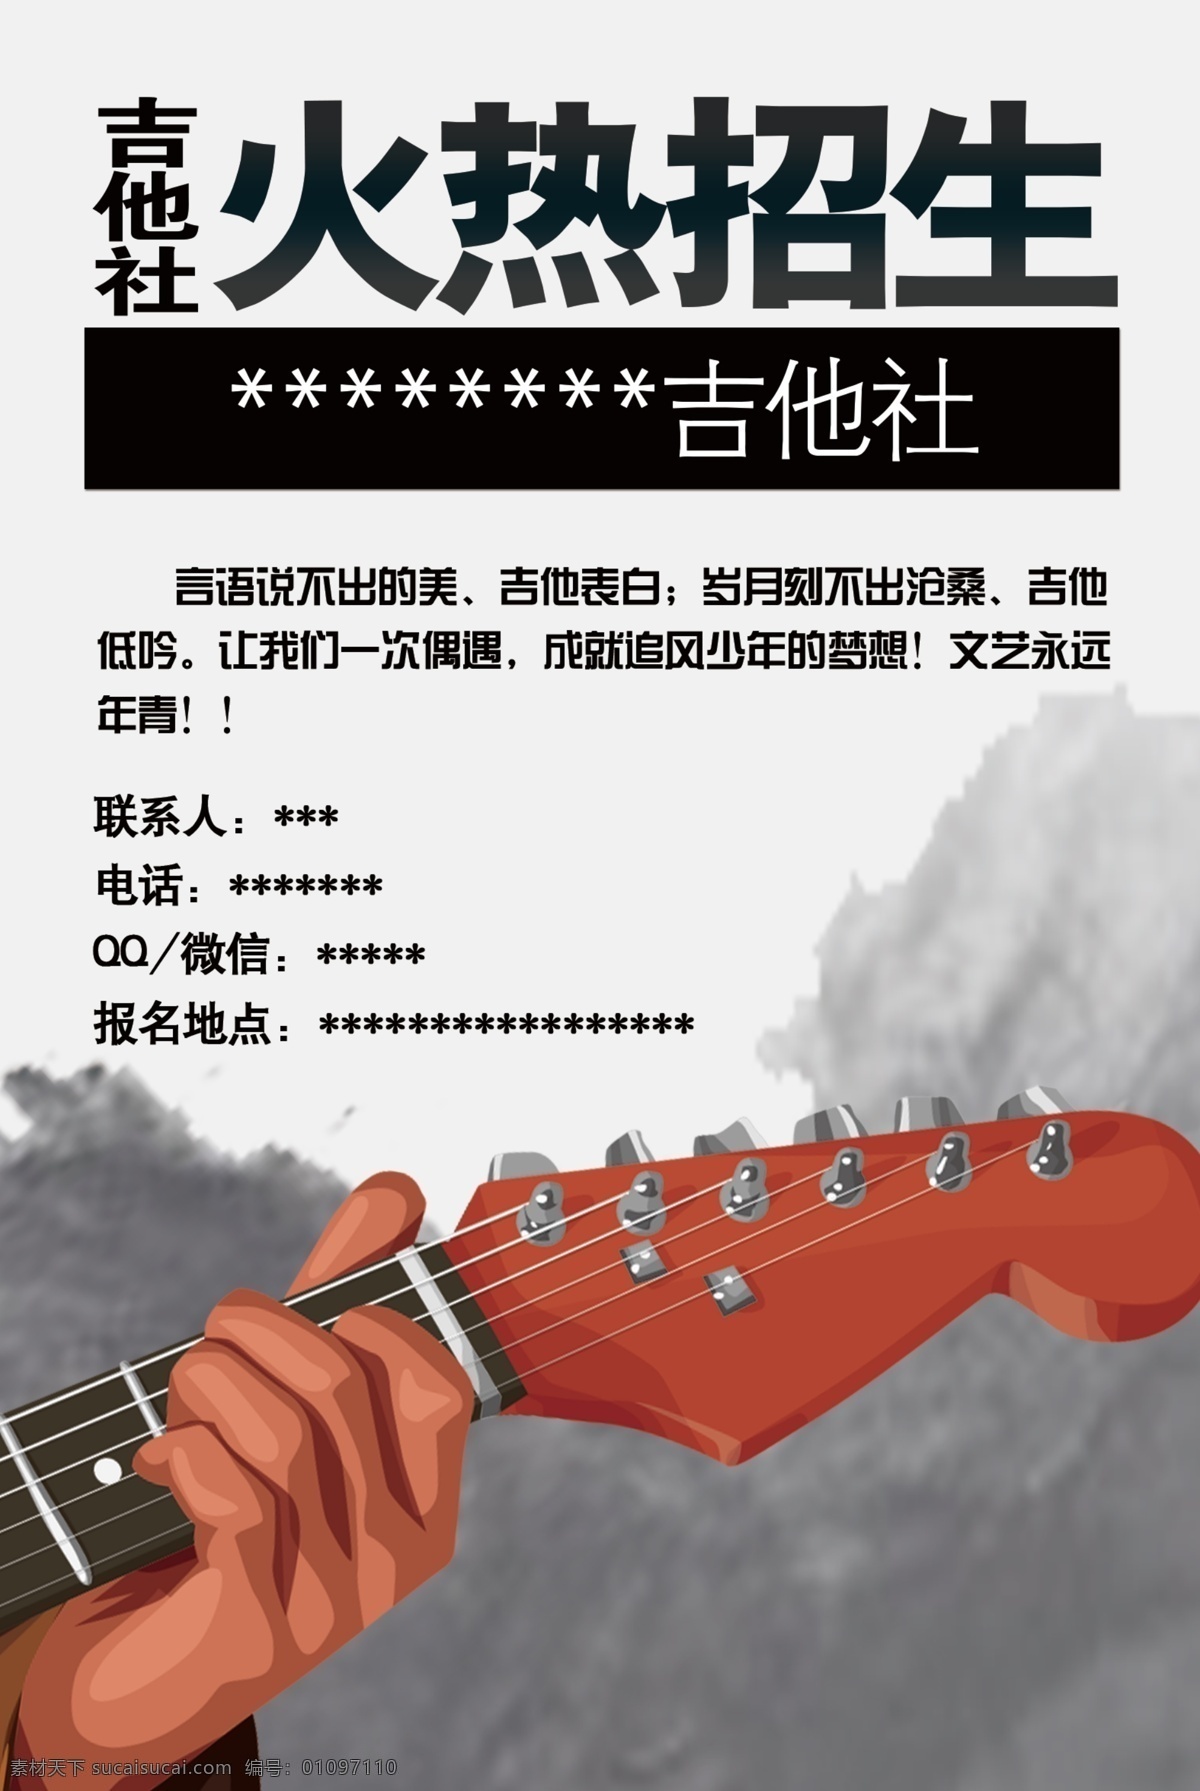 校园 吉他 社团 海报 宣传 积极